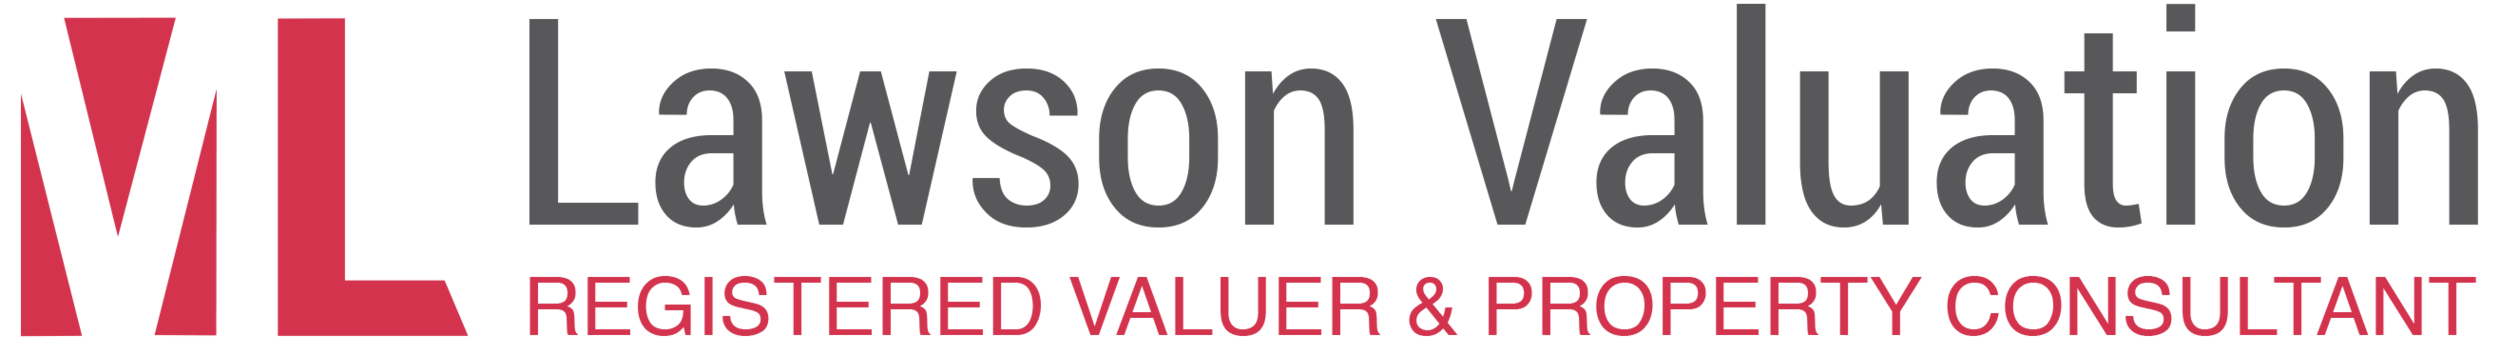 Lawson Valuation